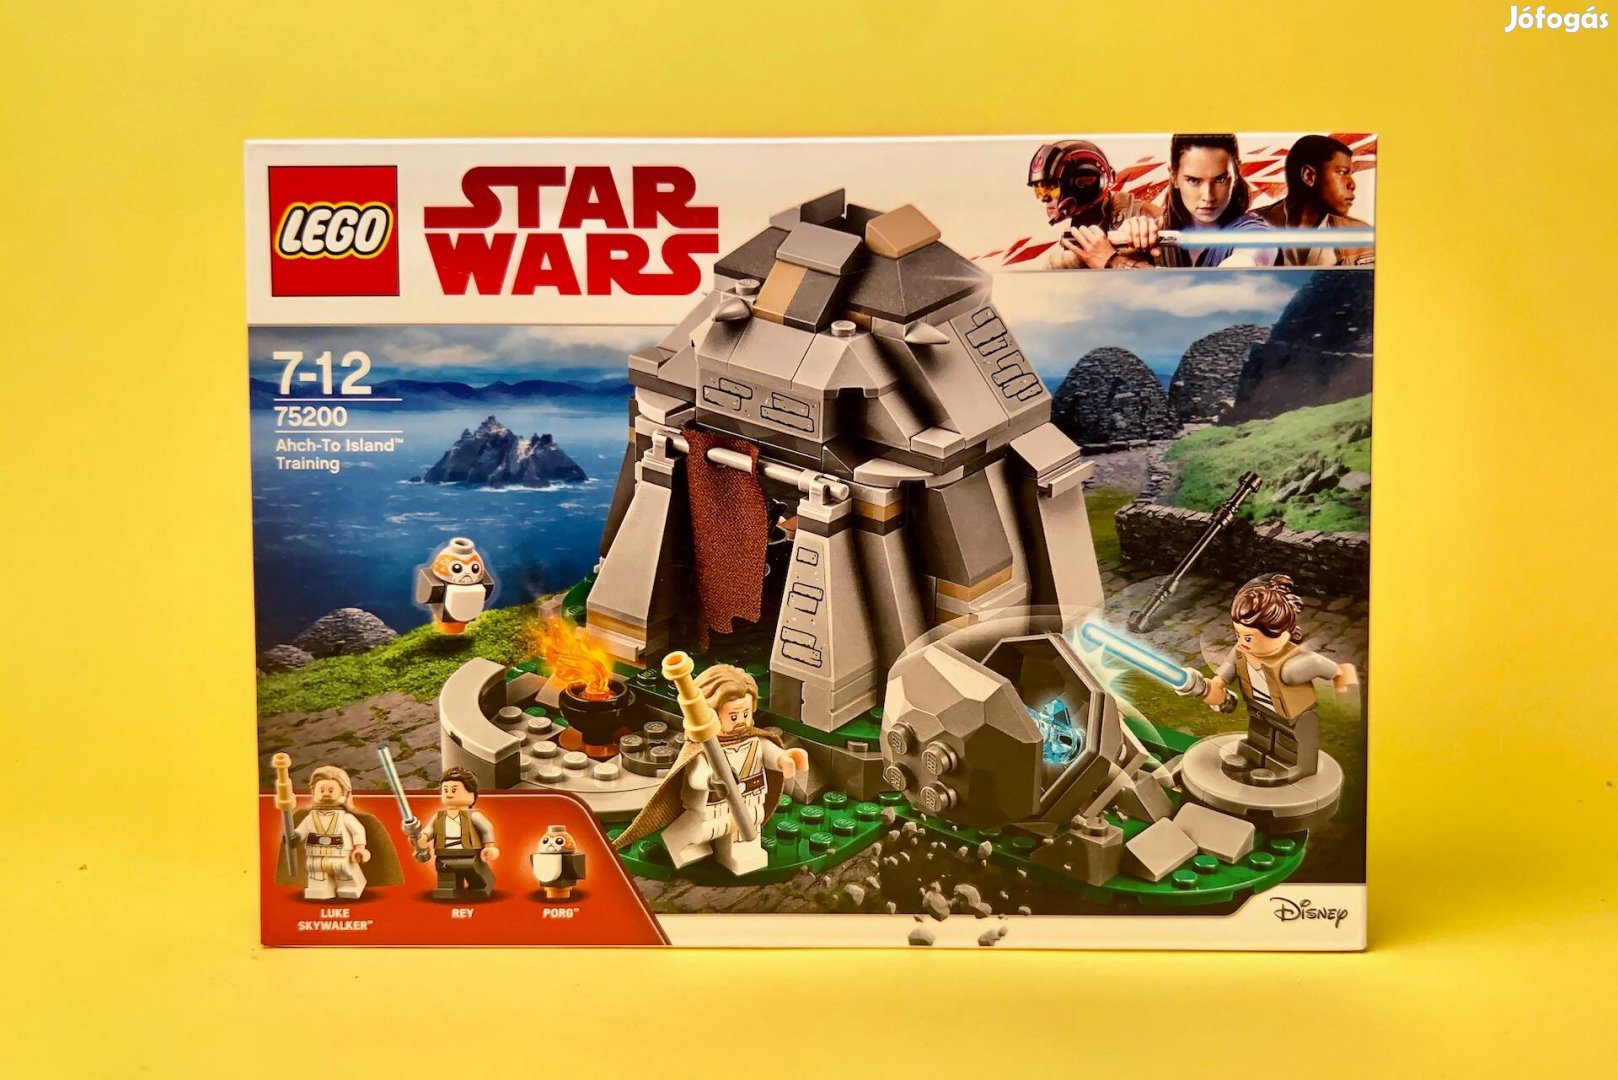 LEGO Star Wars 75200 Ahch-To Island Training, Uj, Bontatlan